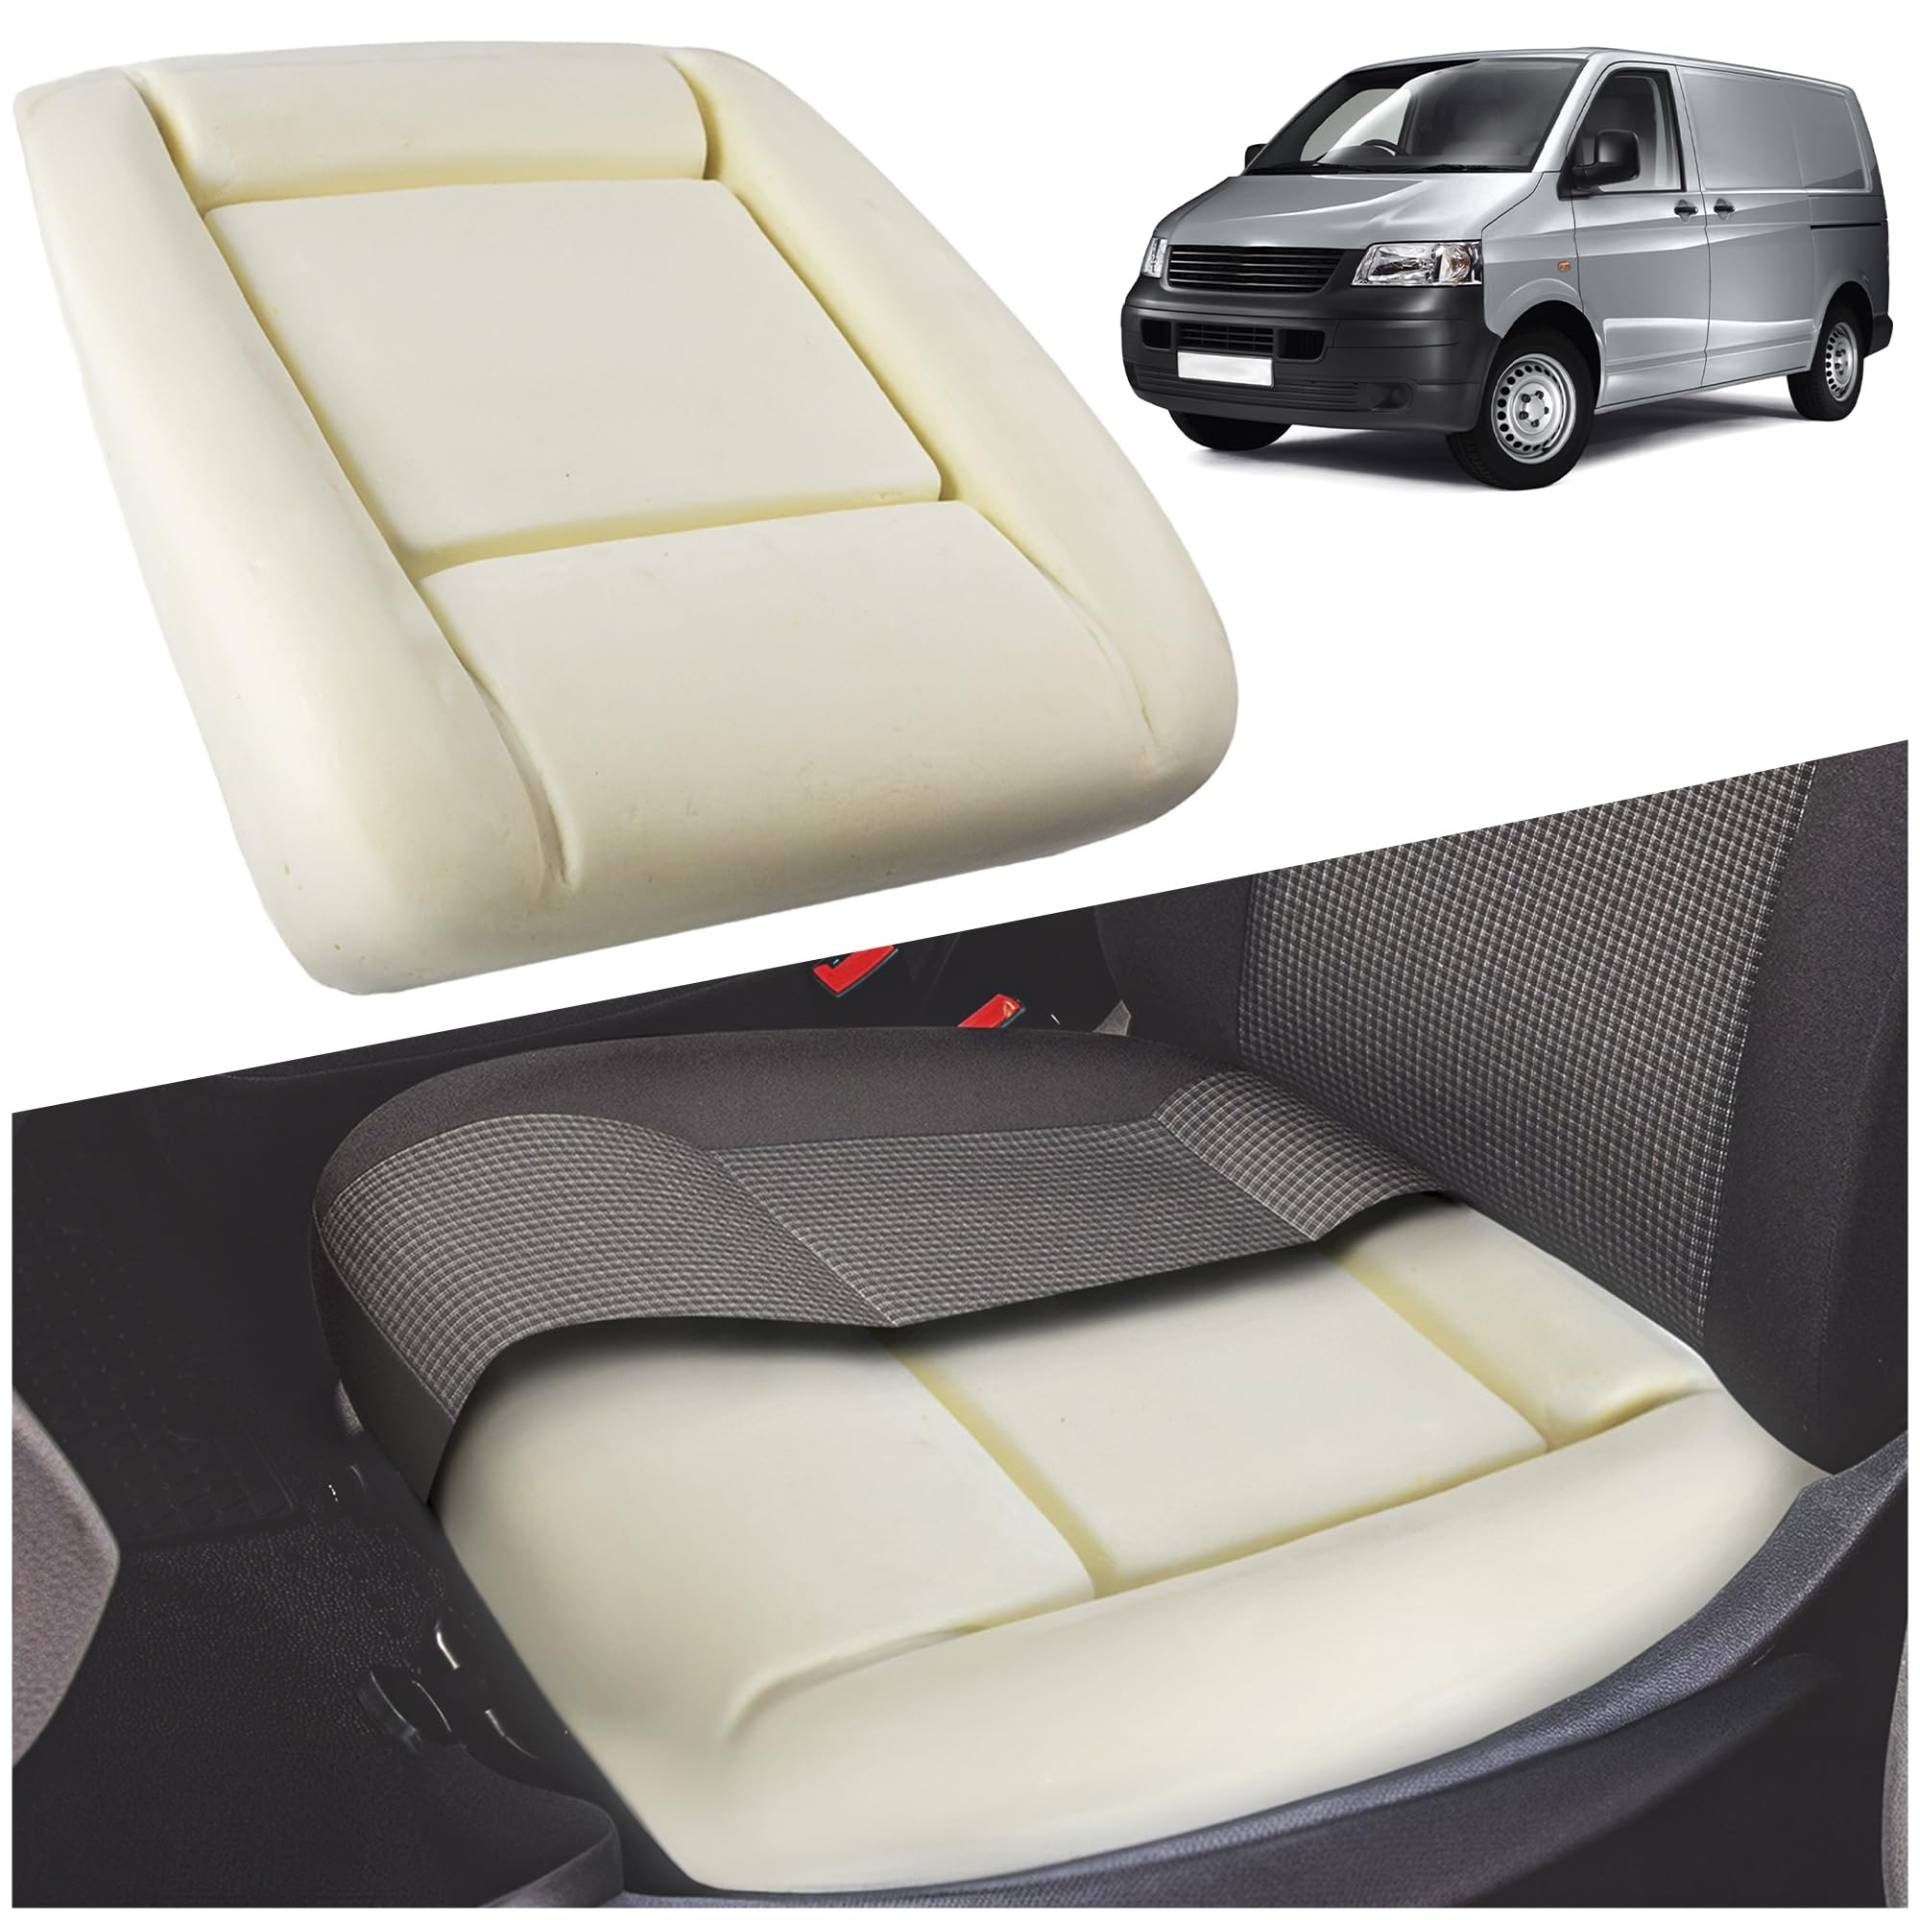 CHROMEMASTER - Kompatibel mit VW T5 Transporter 2003-2015 | Schaumstoff für den Autositz, Sitzschaum für die Sitzfläche, Sitzpolster; Ersetzen Sie den Sitz und Genießen Sie Ihren Bequemen Autositz von CHROMEMASTER